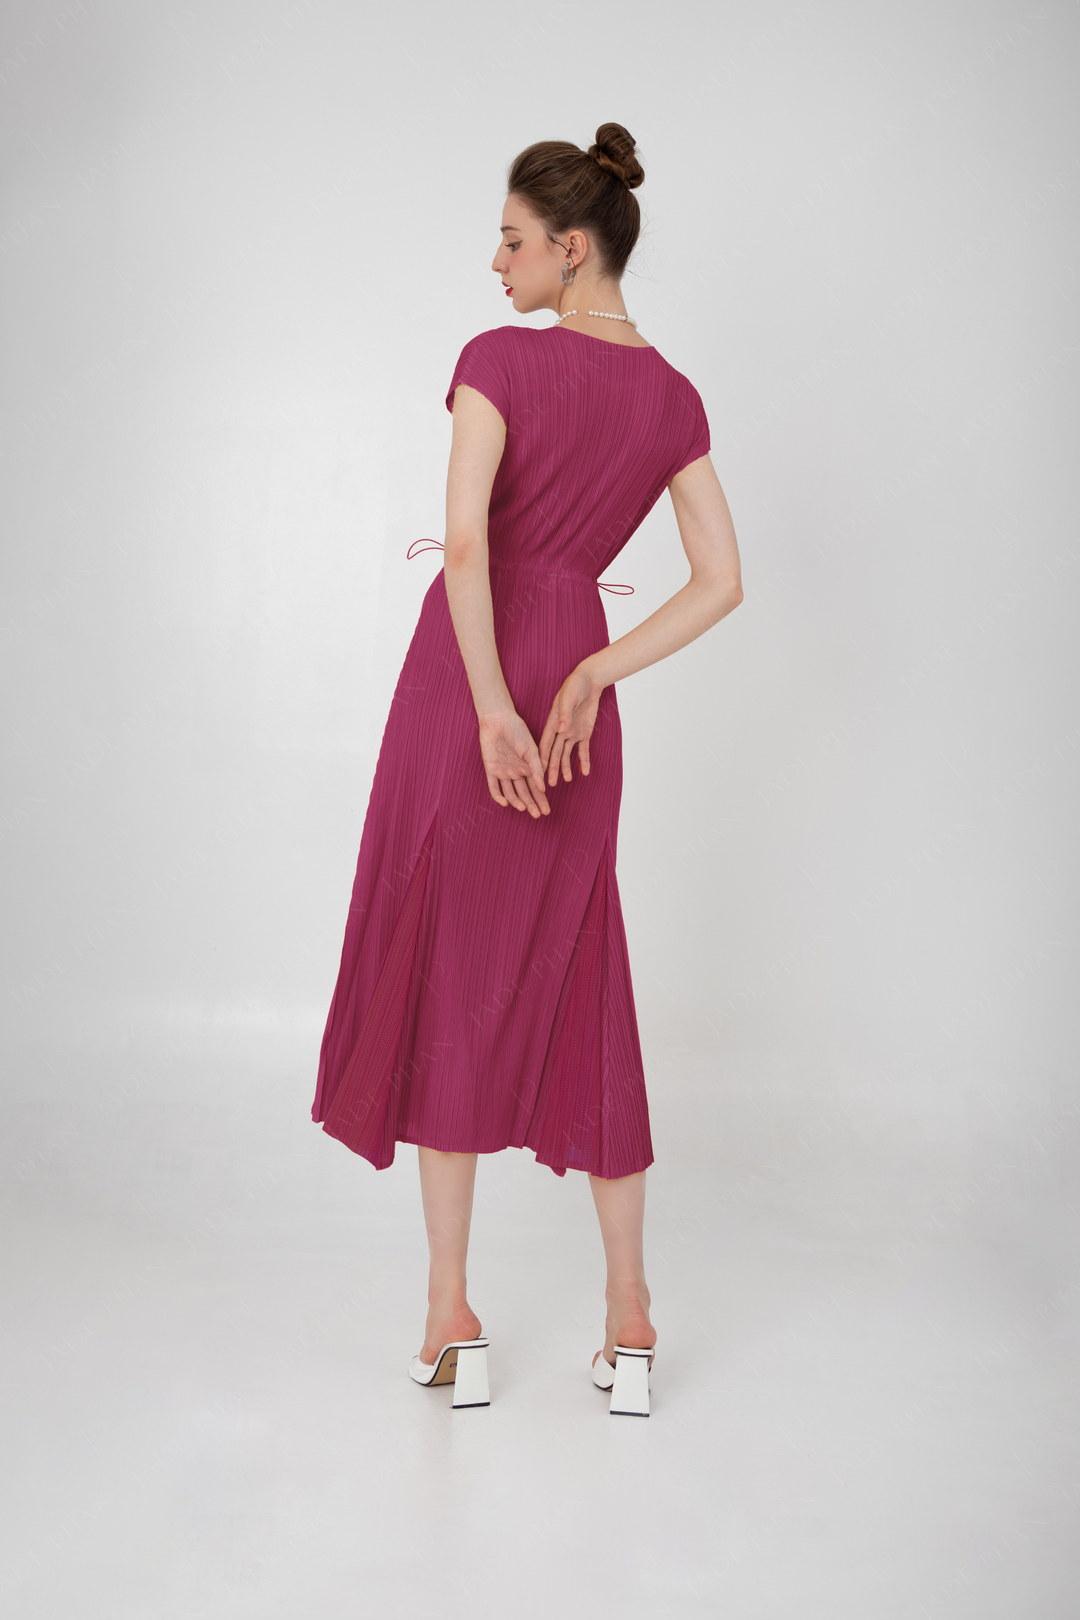 ADELE Pleated Dress - Medium Violet Red